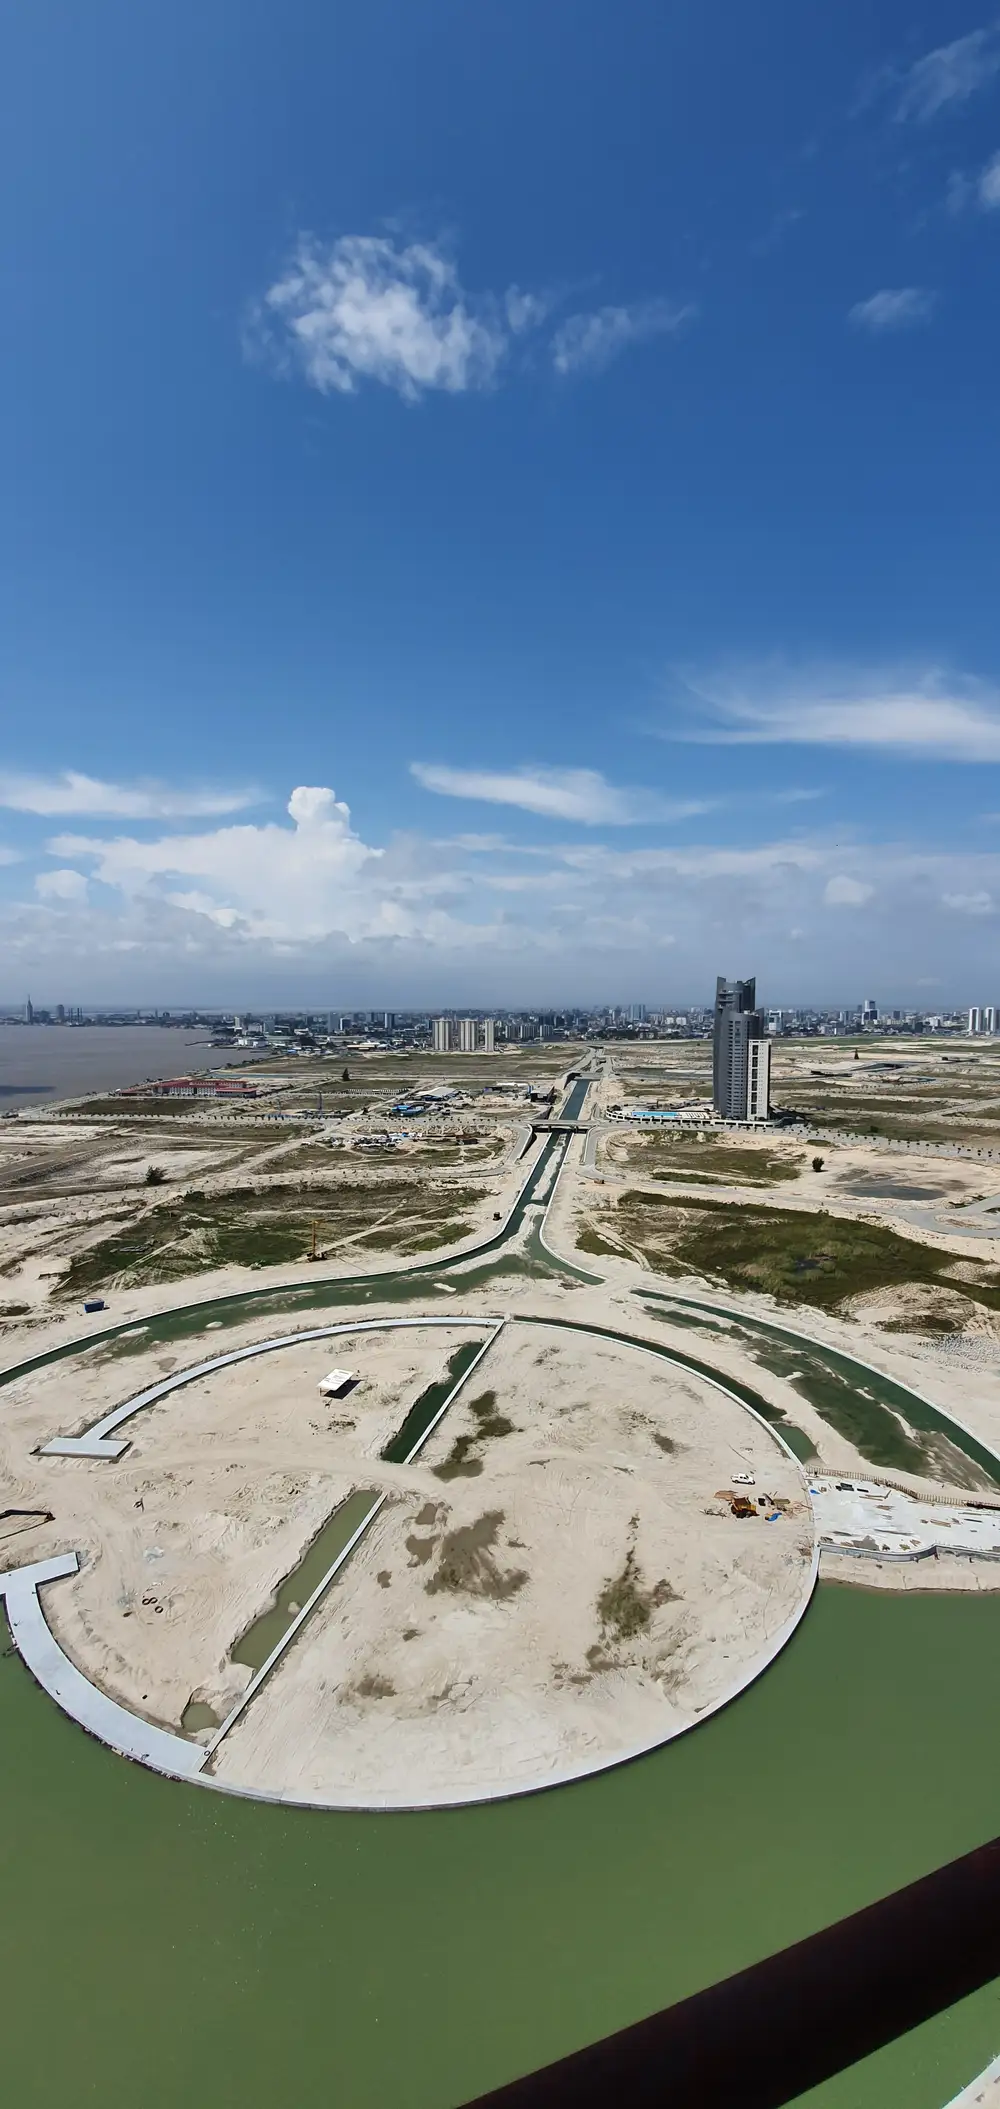 Landscape view of Eko Atlantic construction